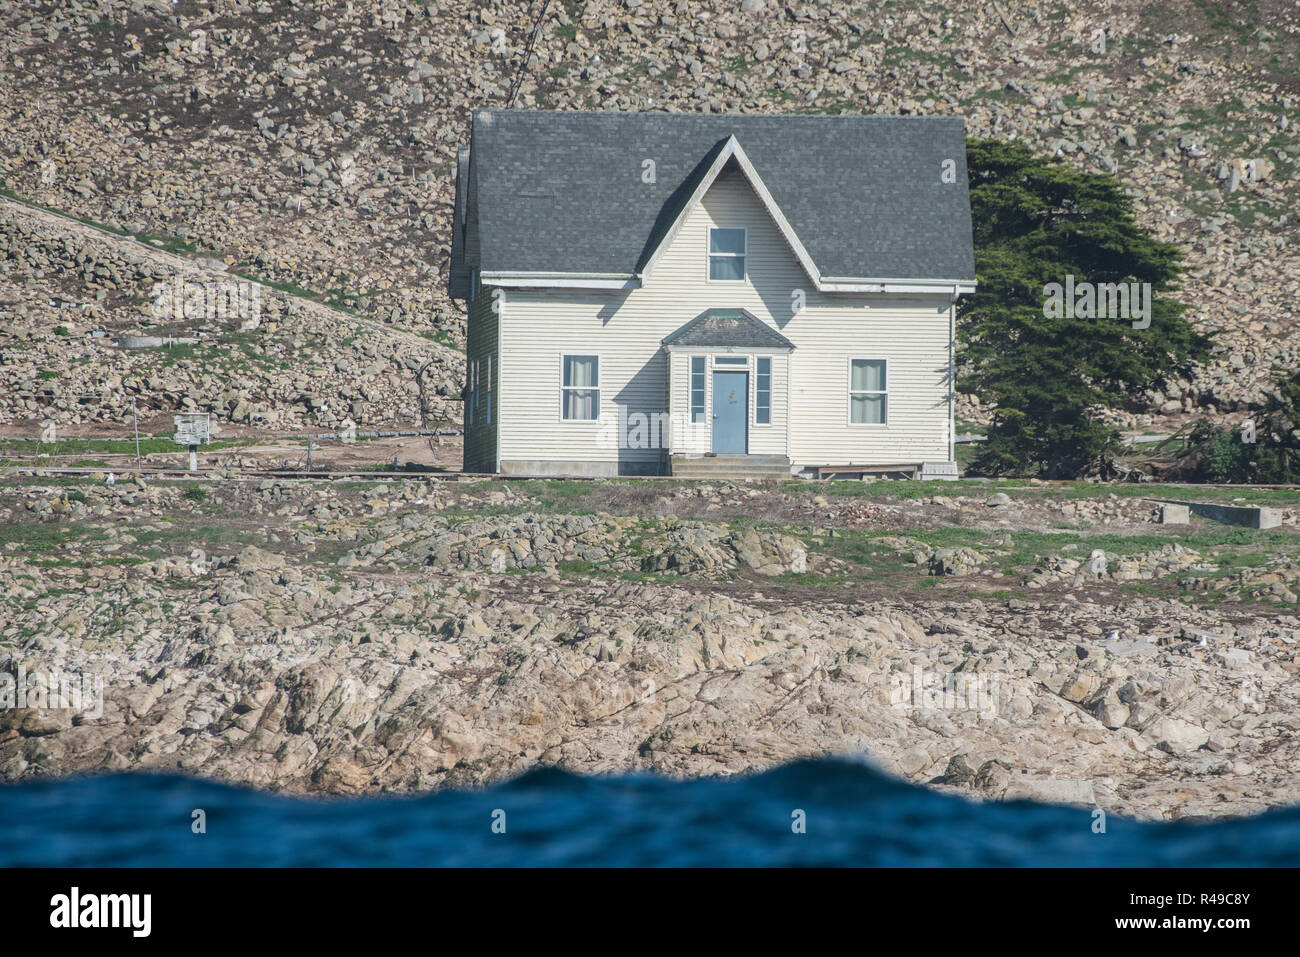 El único edificio en las Islas Farallón son estas pequeñas casas blancas donde duermen los científicos visitantes. Foto de stock